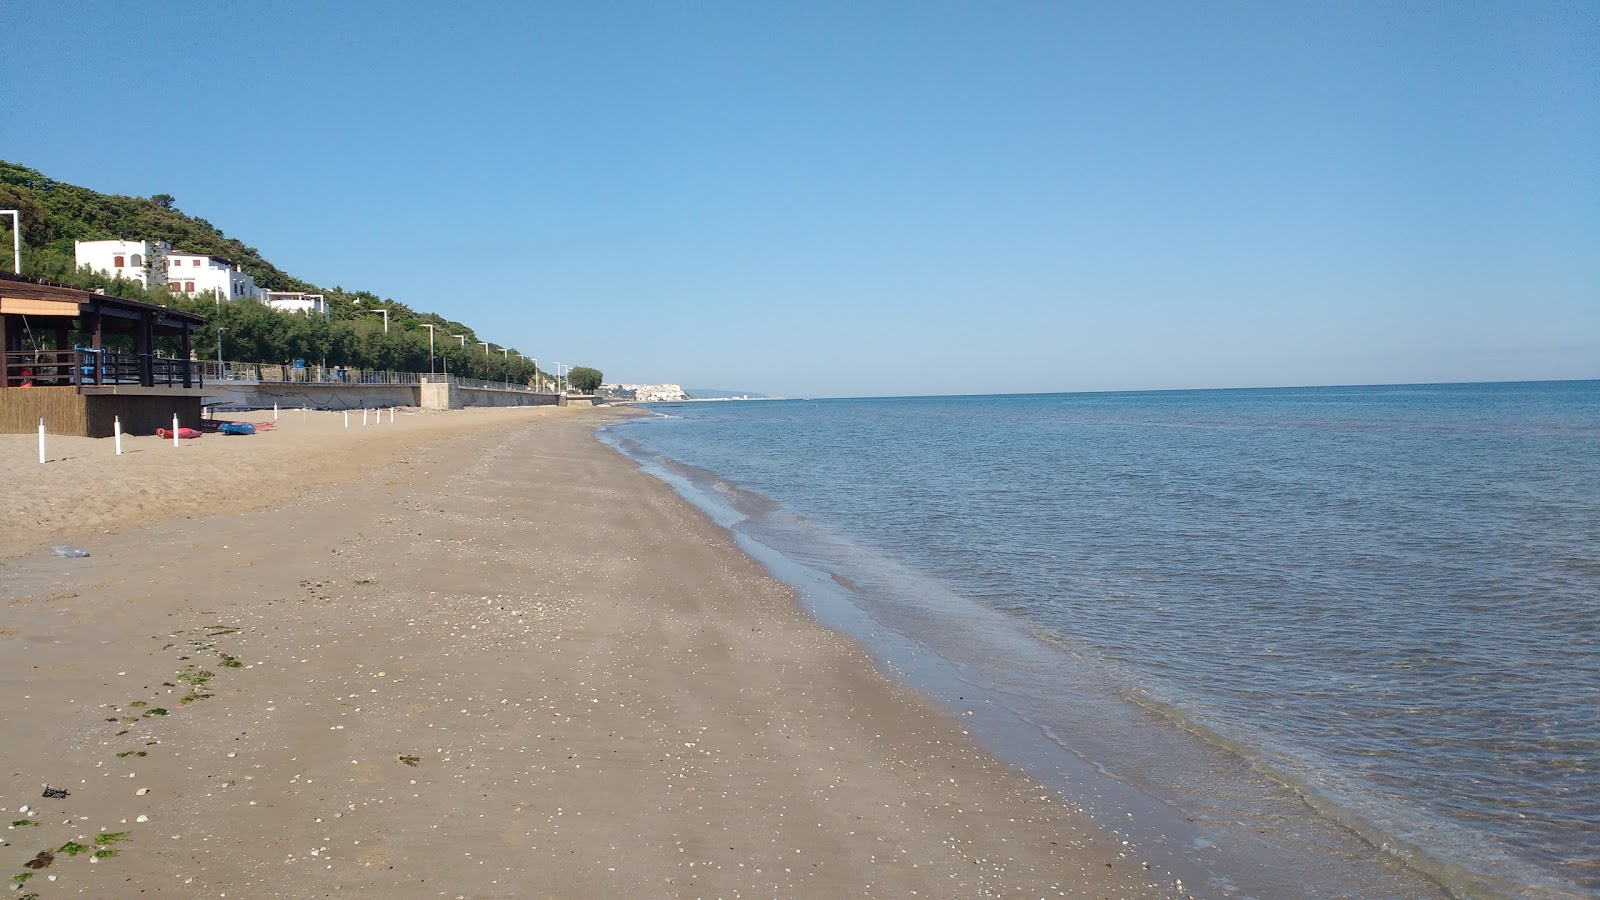 Spiaggia di San Menaio'in fotoğrafı kahverengi kum yüzey ile